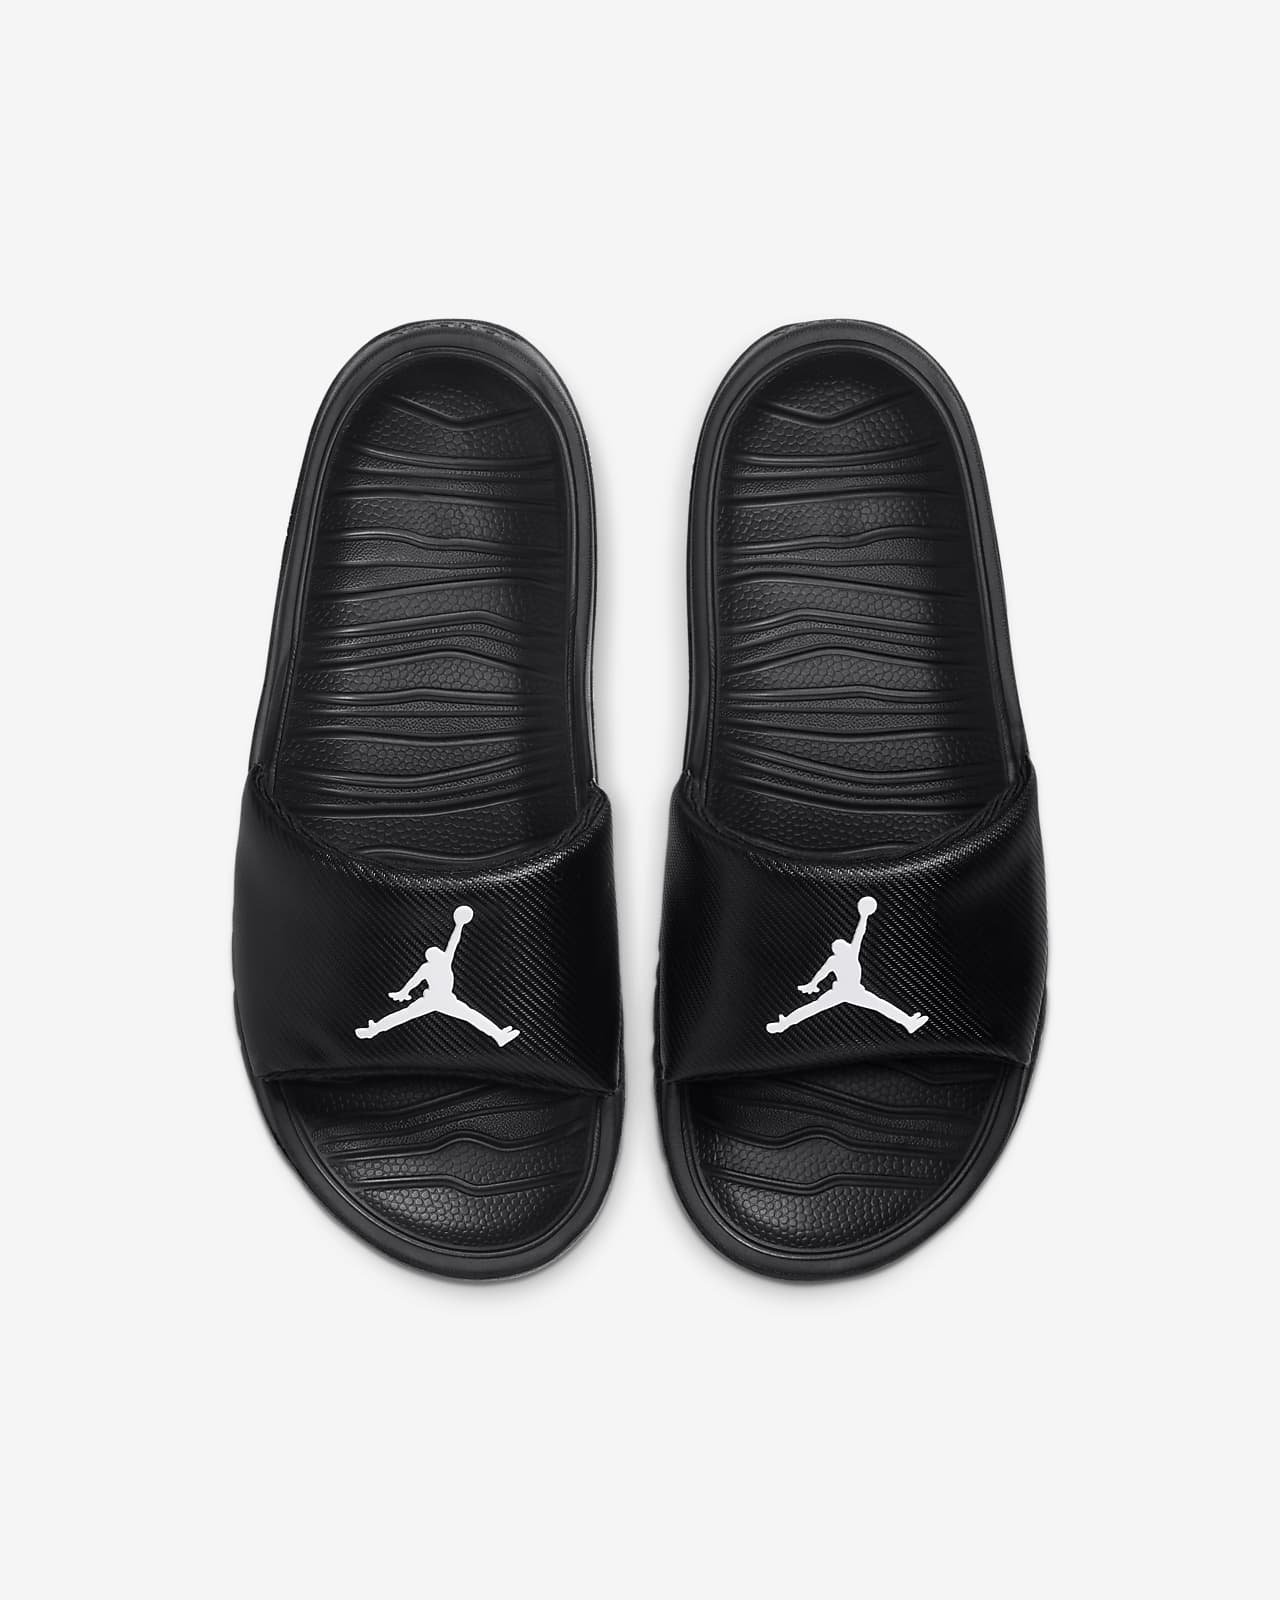 Jordan Break Papucs Nagyobb Gyerekeknek Nike Hu